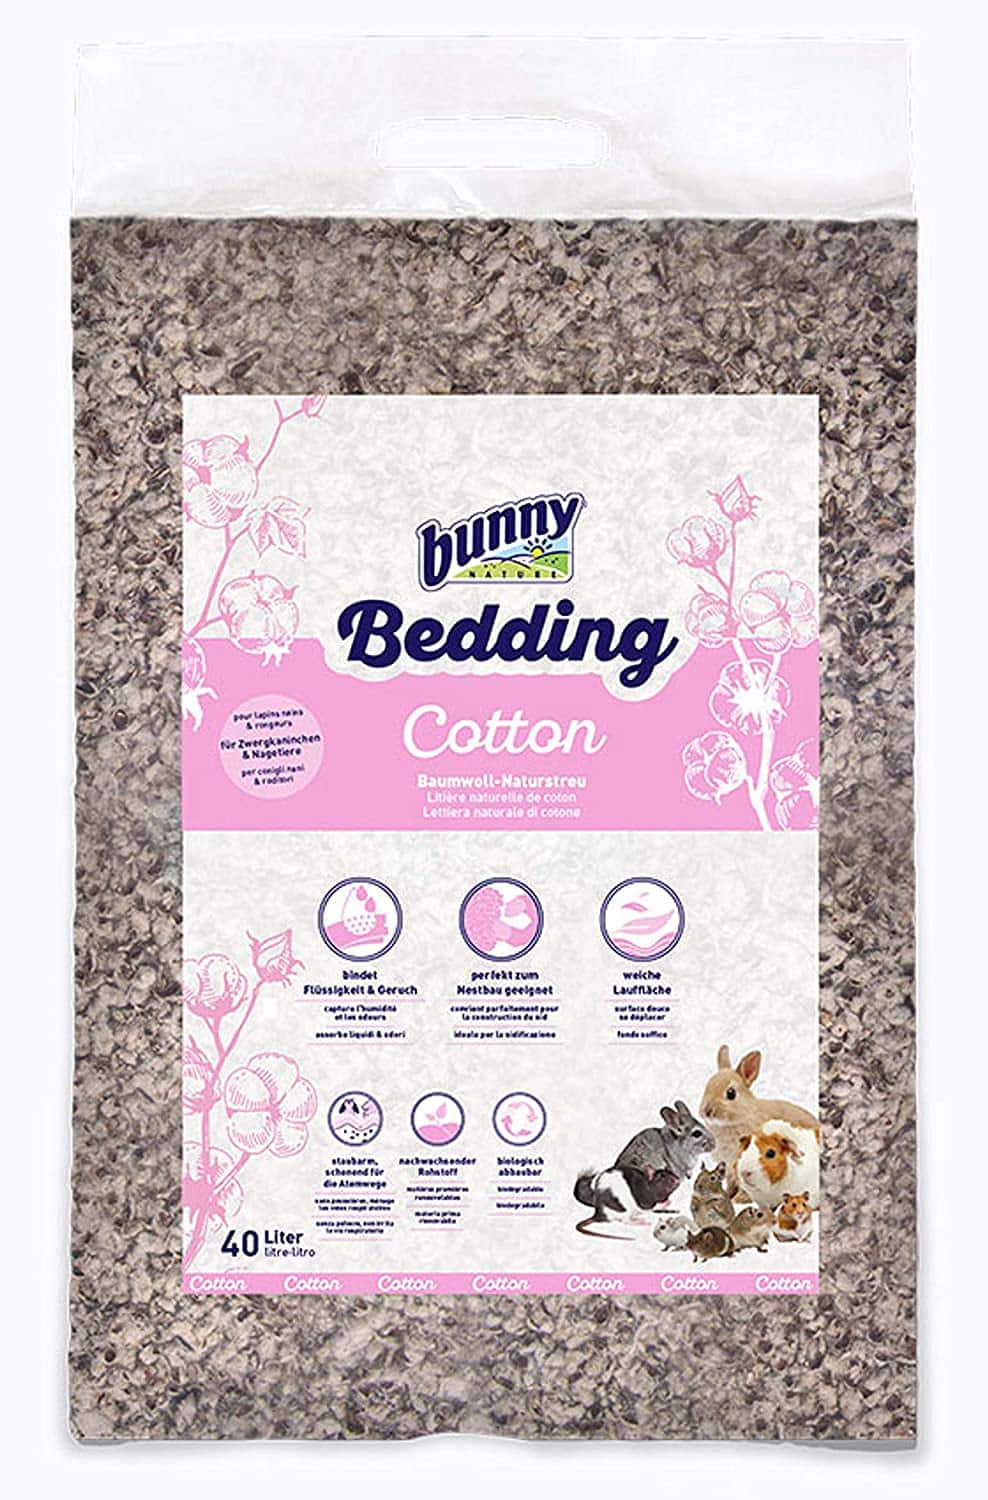 Bunny bedding cotton